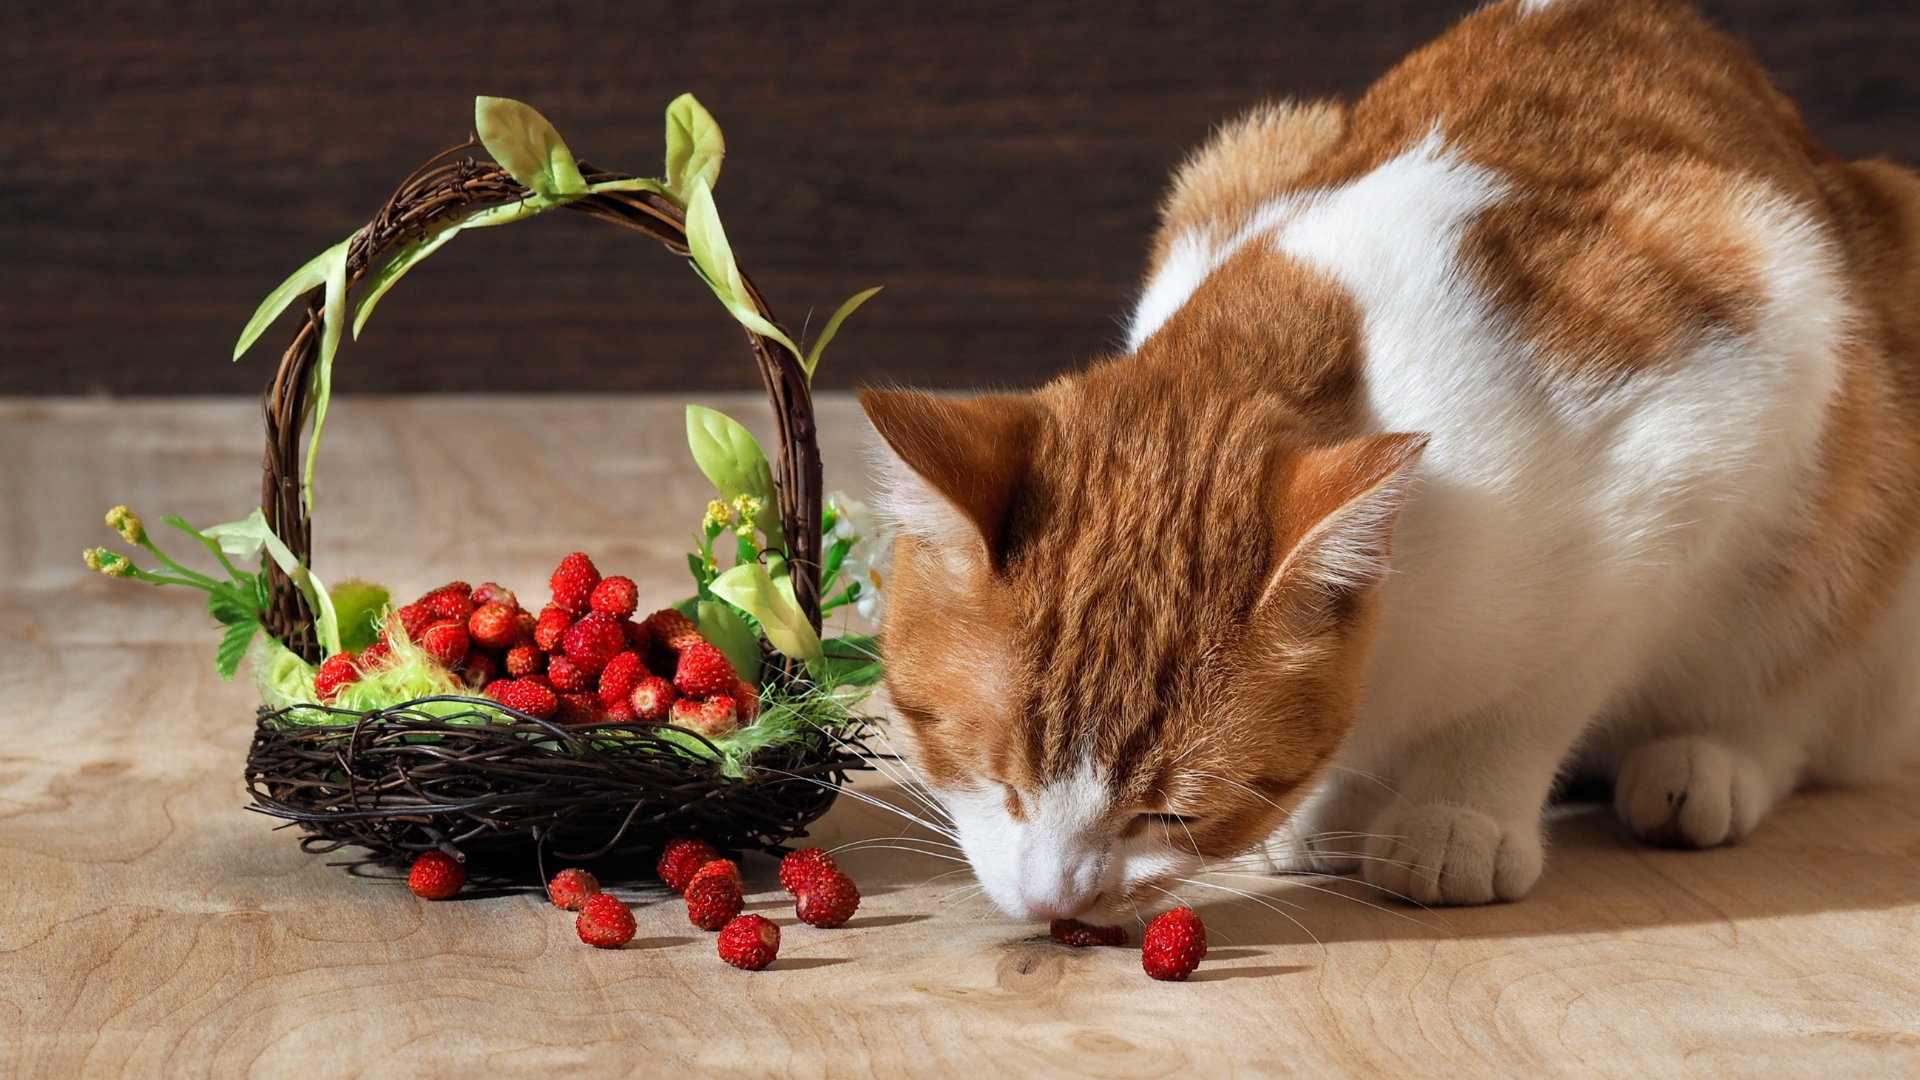 Mogen katten aardbeien eten? Ja, en de meeste katten zijn er dol op!